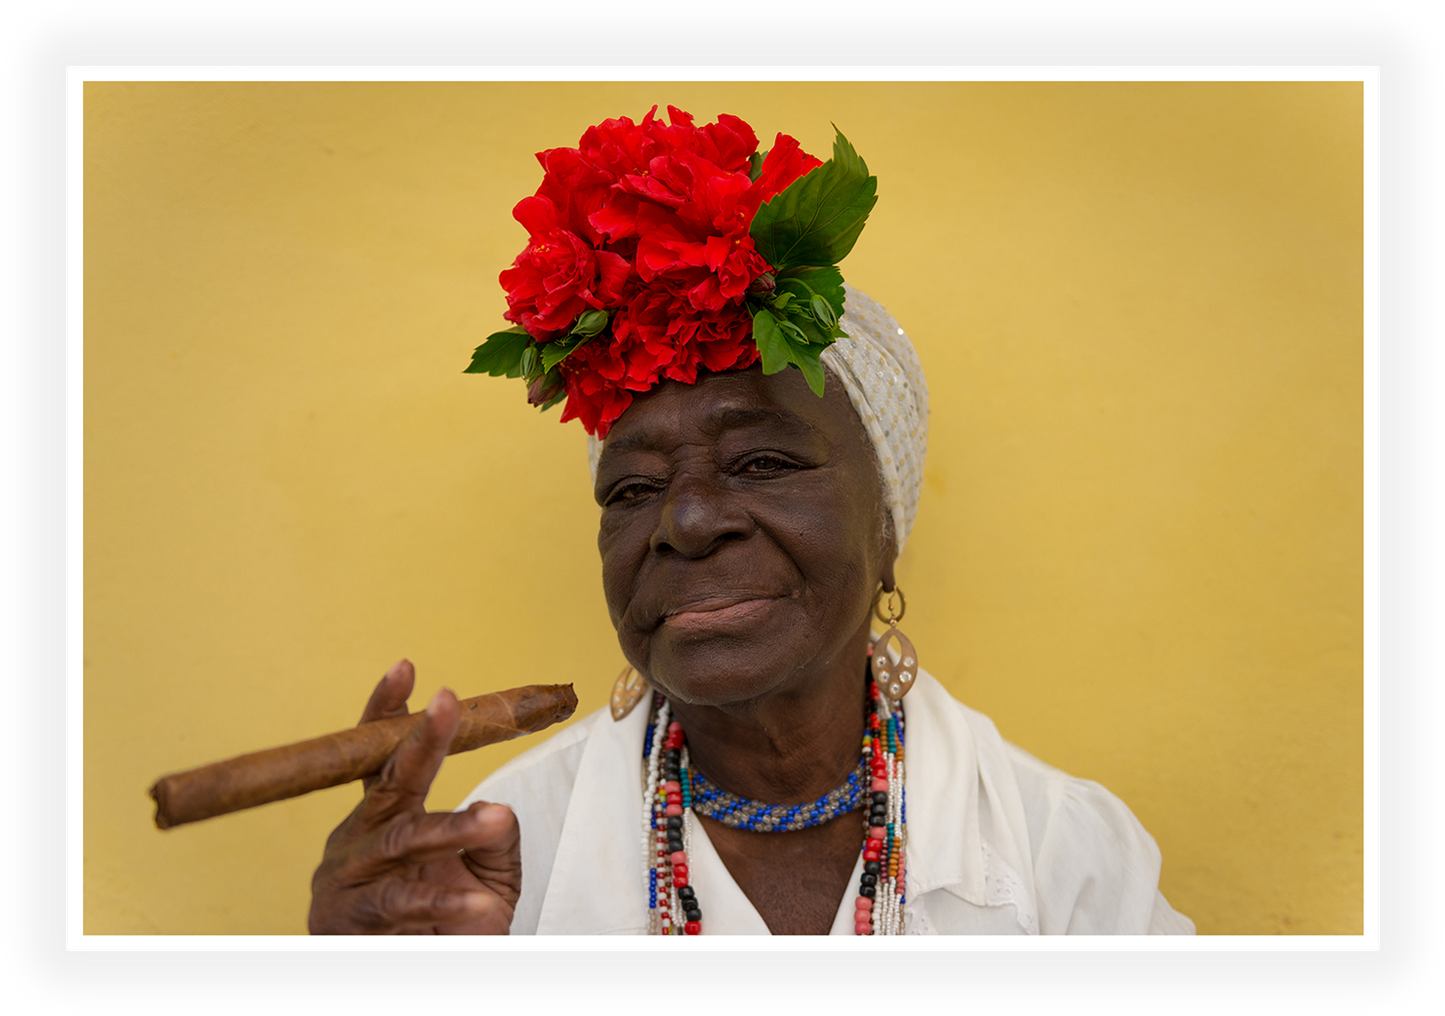 Cuba - Soulful Indulgence - Cuban Woman's Cigar Ritual in Havana Vieja